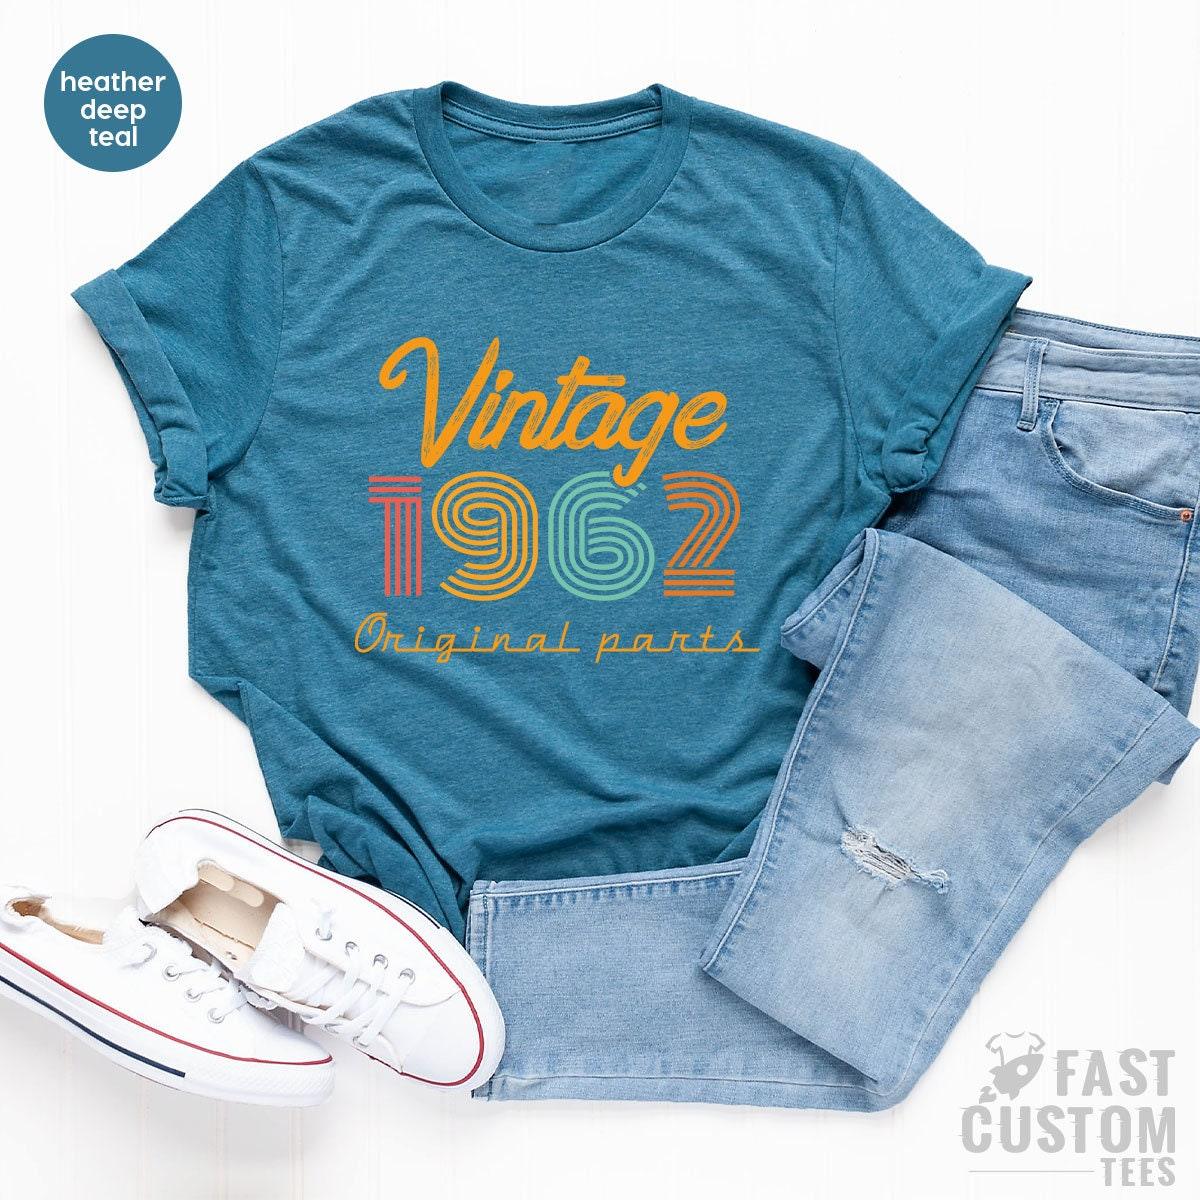 59th Birthday Shirt, Vintage T Shirt, Vintage 1962 Shirt, 59th Birthday Gift For Women, 59th Birthday Shirt Men, Retro Shirt, Vintage Shirts - Fastdeliverytees.com